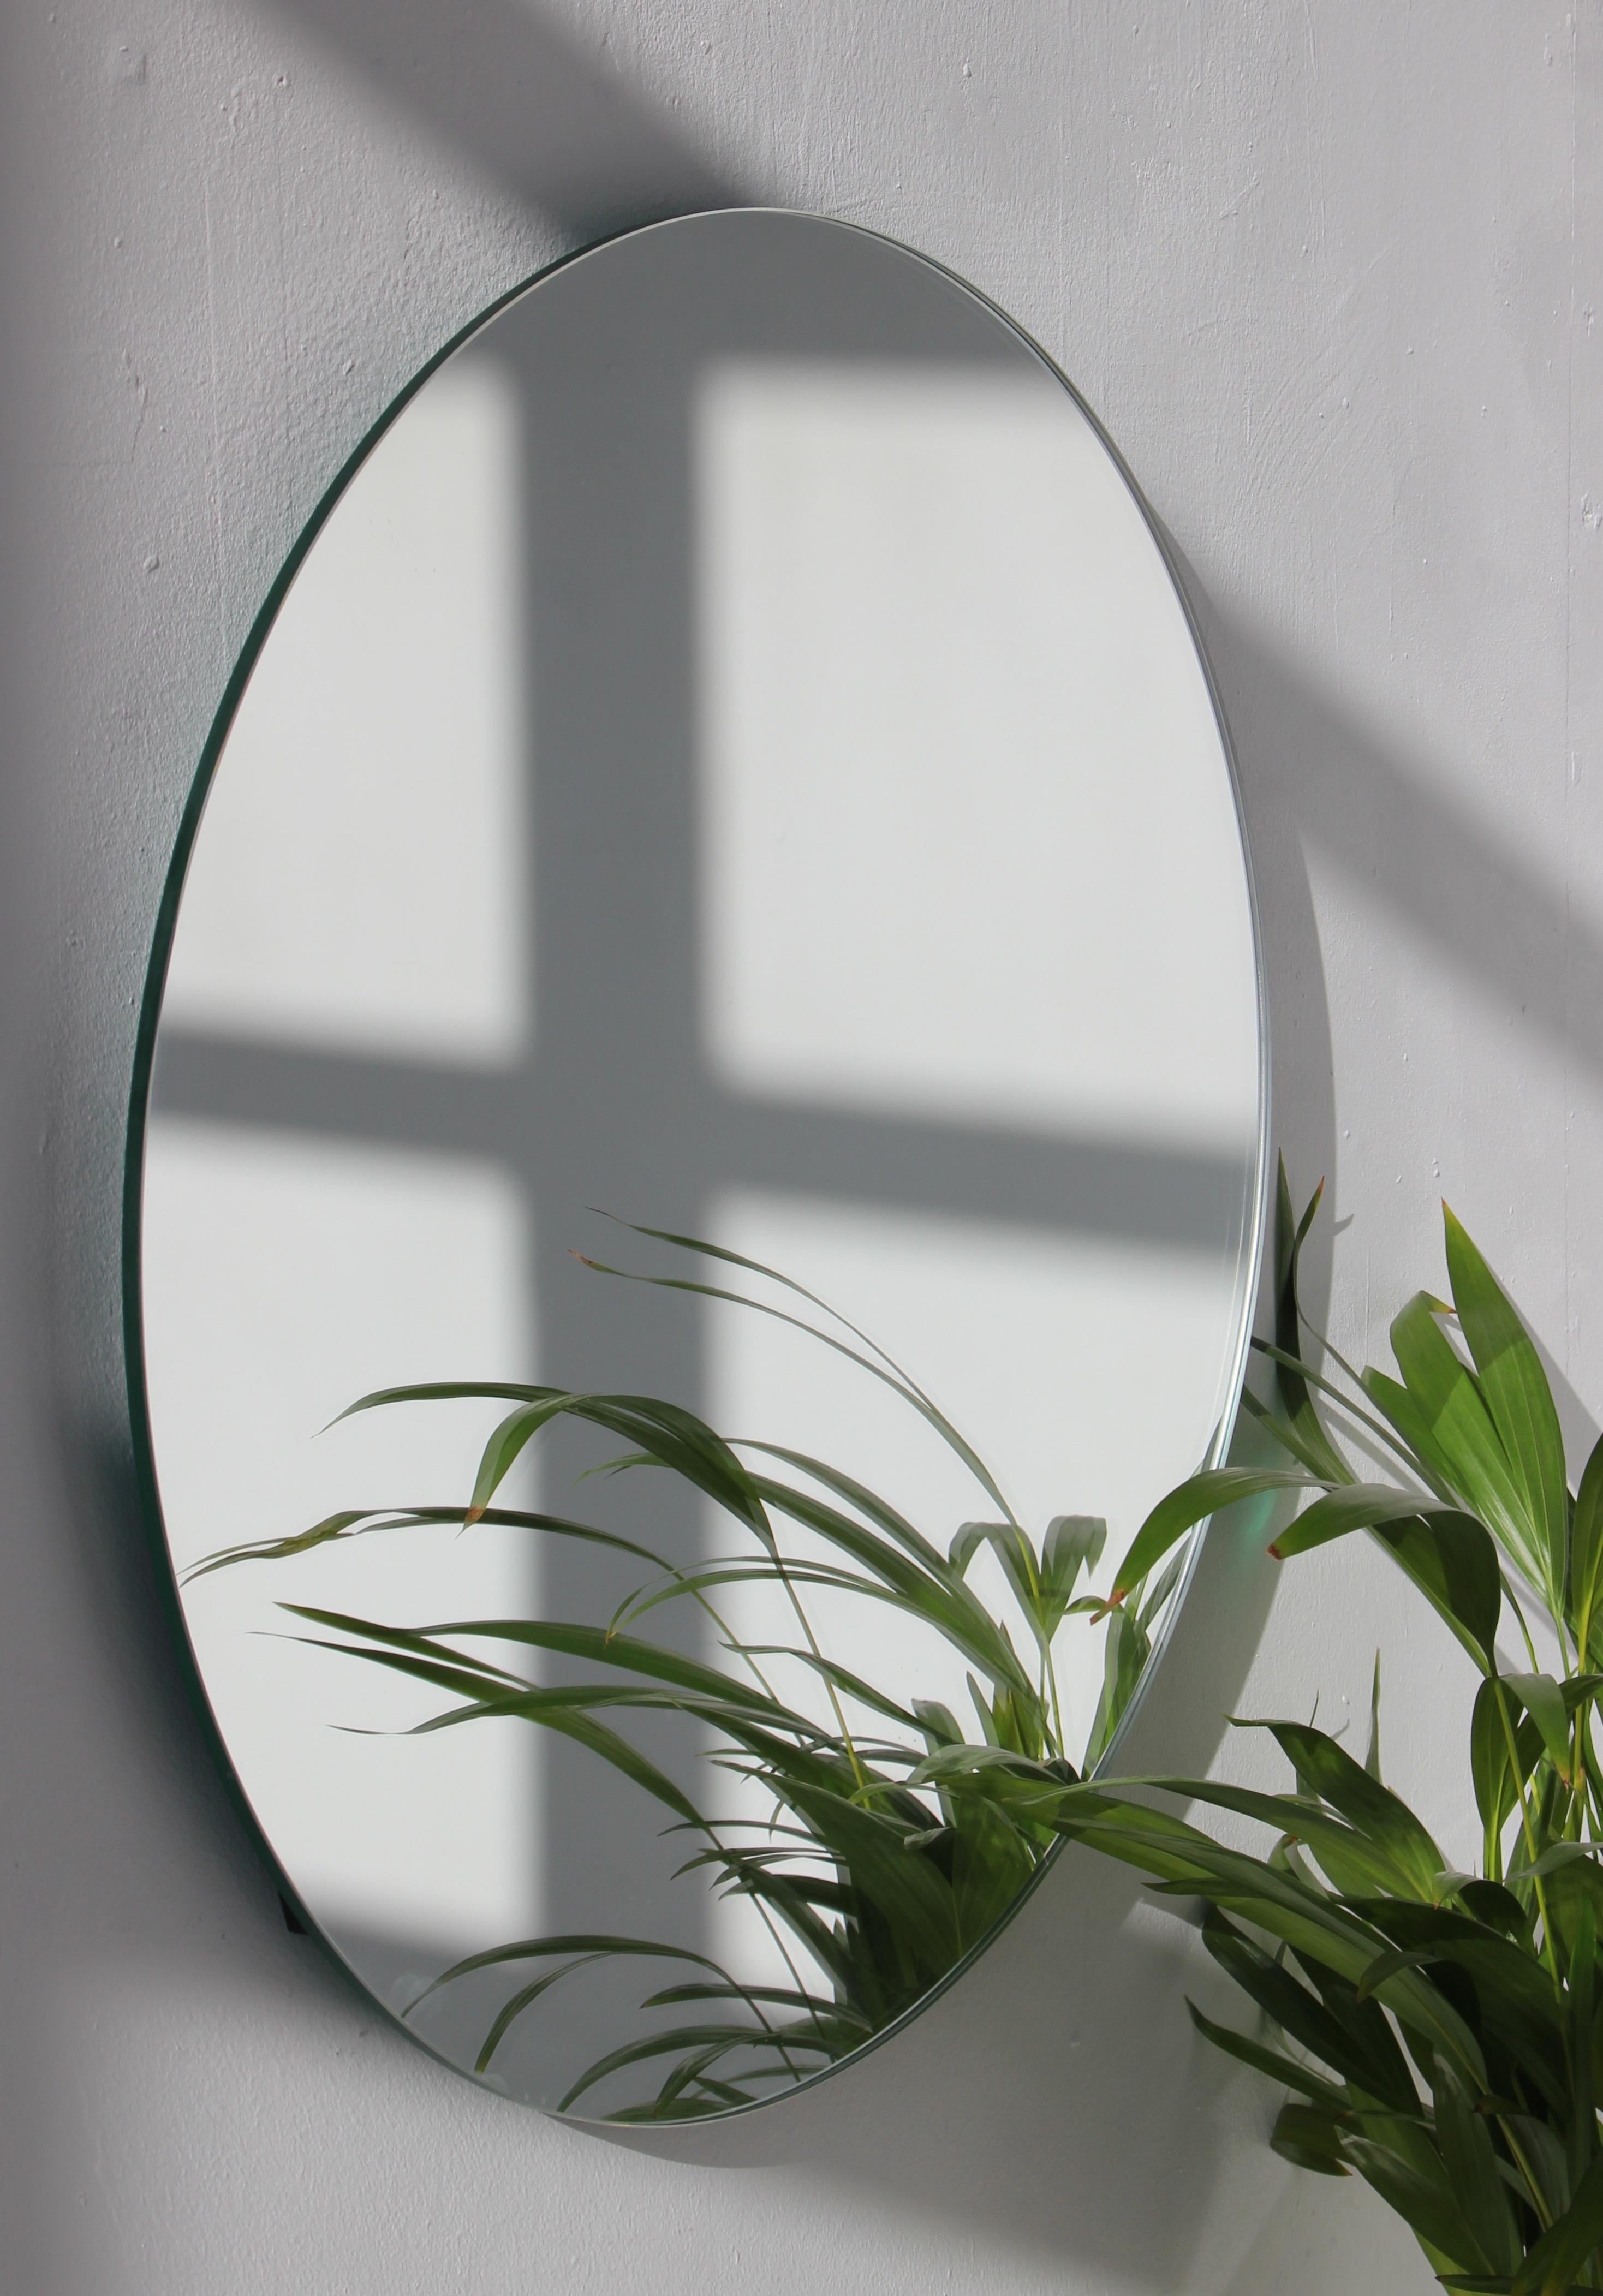 Minimalistischer runder rahmenloser Spiegel mit Schwebeeffekt. Hochwertiges Design, das dafür sorgt, dass der Spiegel perfekt parallel zur Wand steht. Entworfen und hergestellt in London, UK.

Ausgestattet mit professionellen Platten, die im